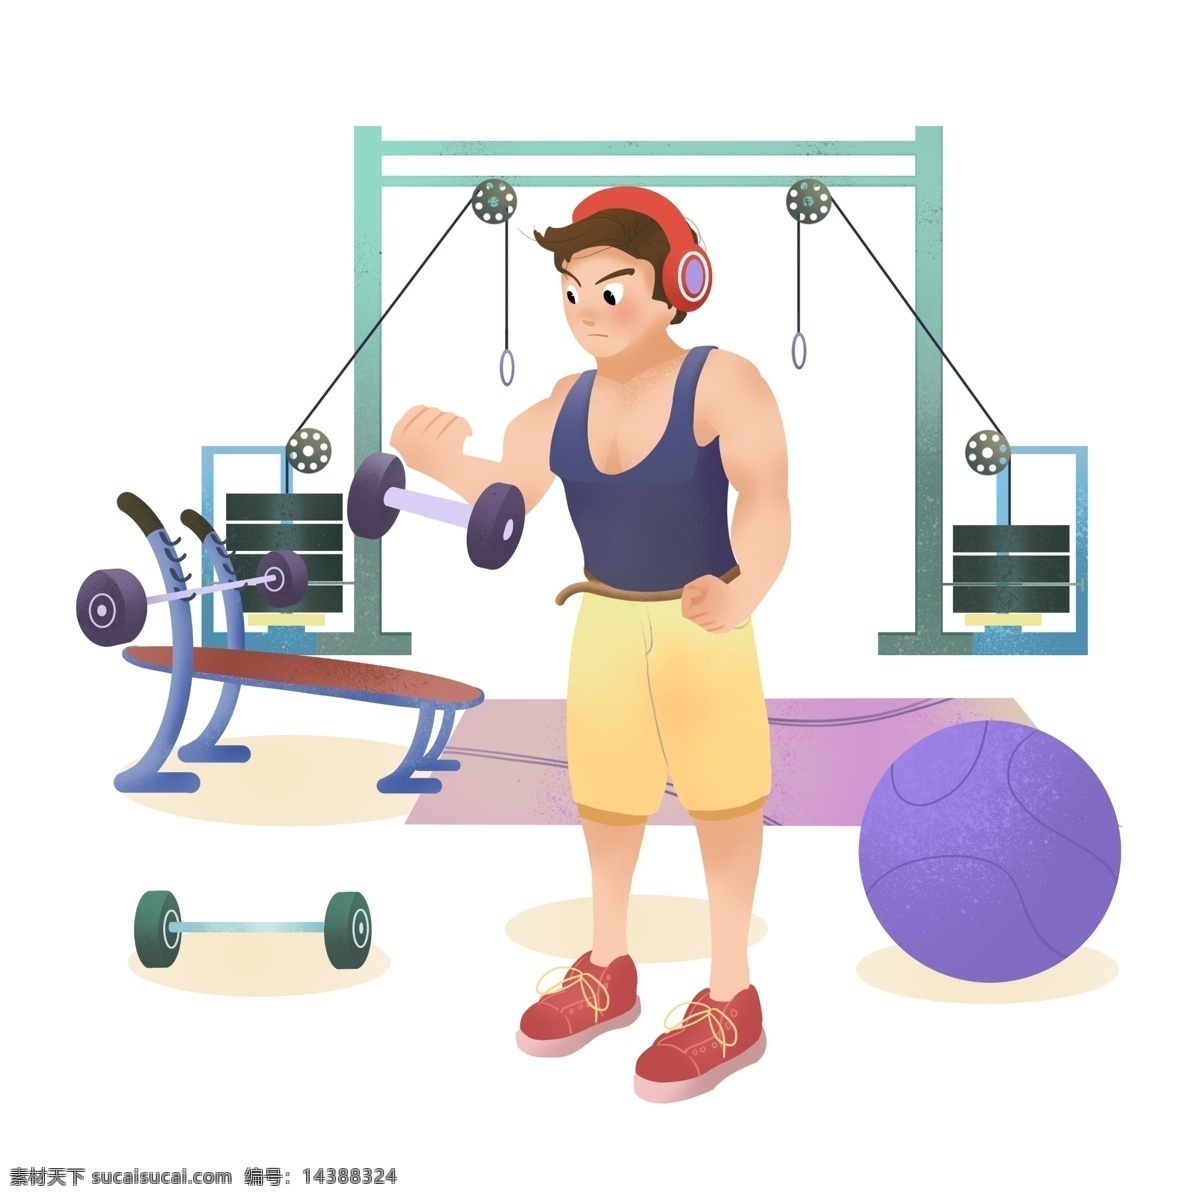 举重 运动 健身 插画 举重的运动 卡通插画 运动健身 活动筋骨 锻炼身体 体育锻炼 帅气的男孩